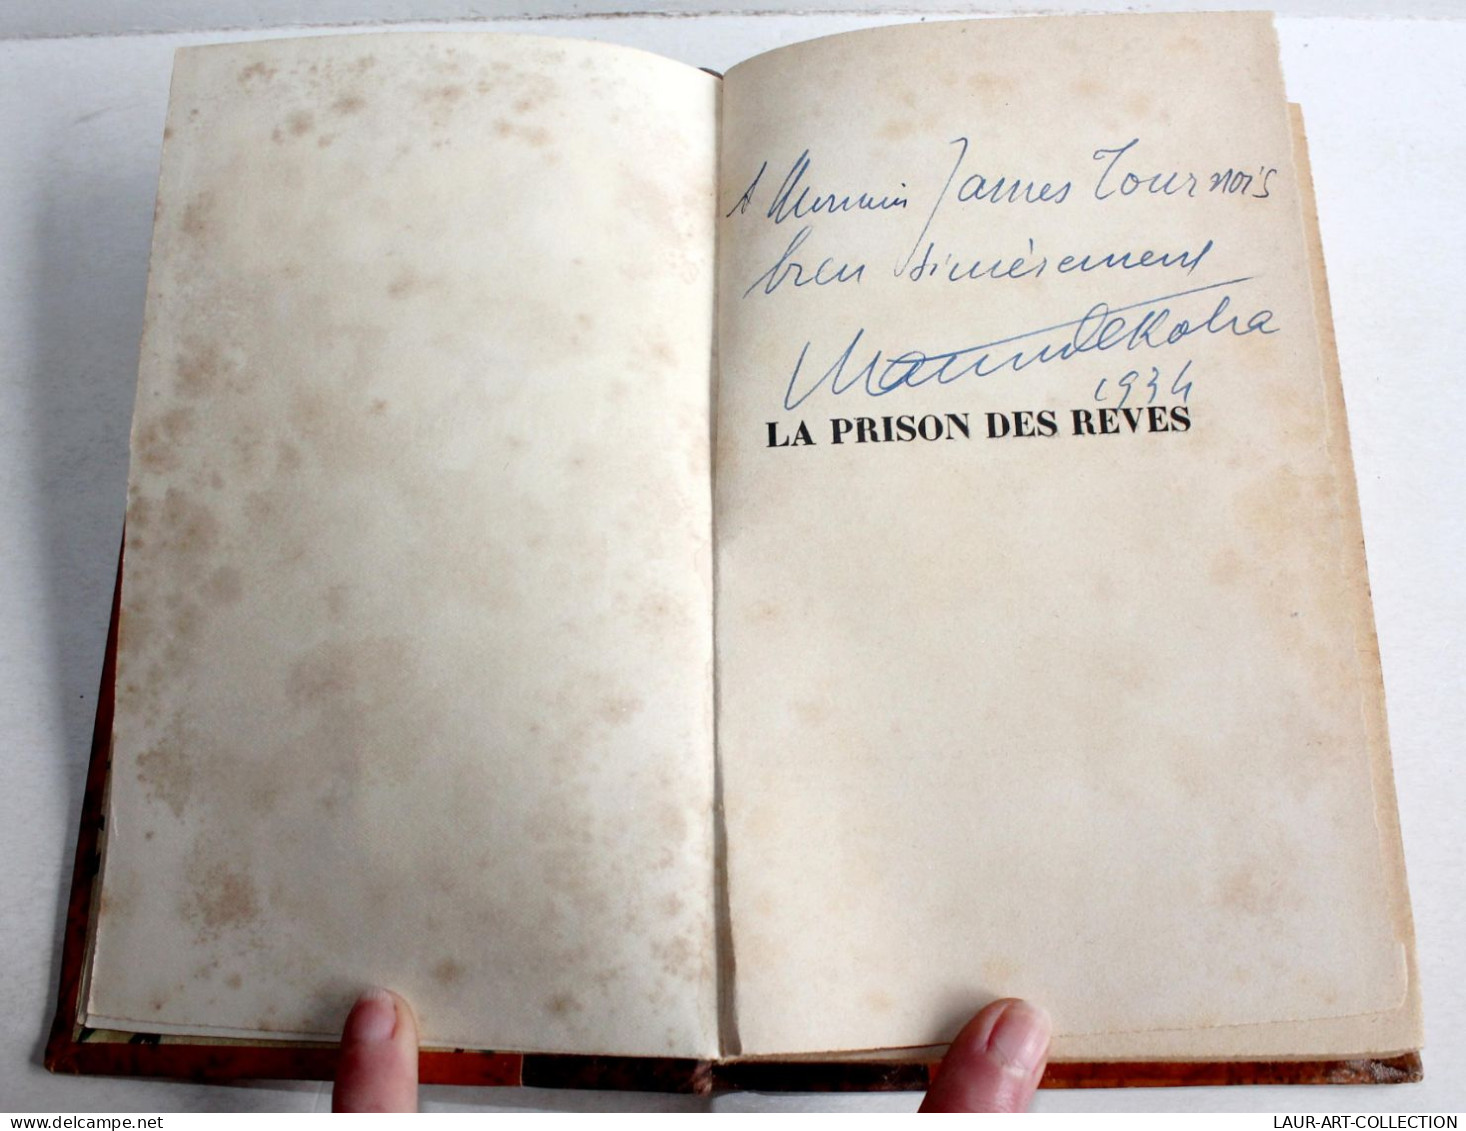 ENVOI D'AUTEUR MAURICE DEKOBRA EDITION ORIGINAL PRISON DES REVES 1934 BAUDINIERE / ANCIEN LIVRE XXe SIECLE (2204.36) - Livres Dédicacés